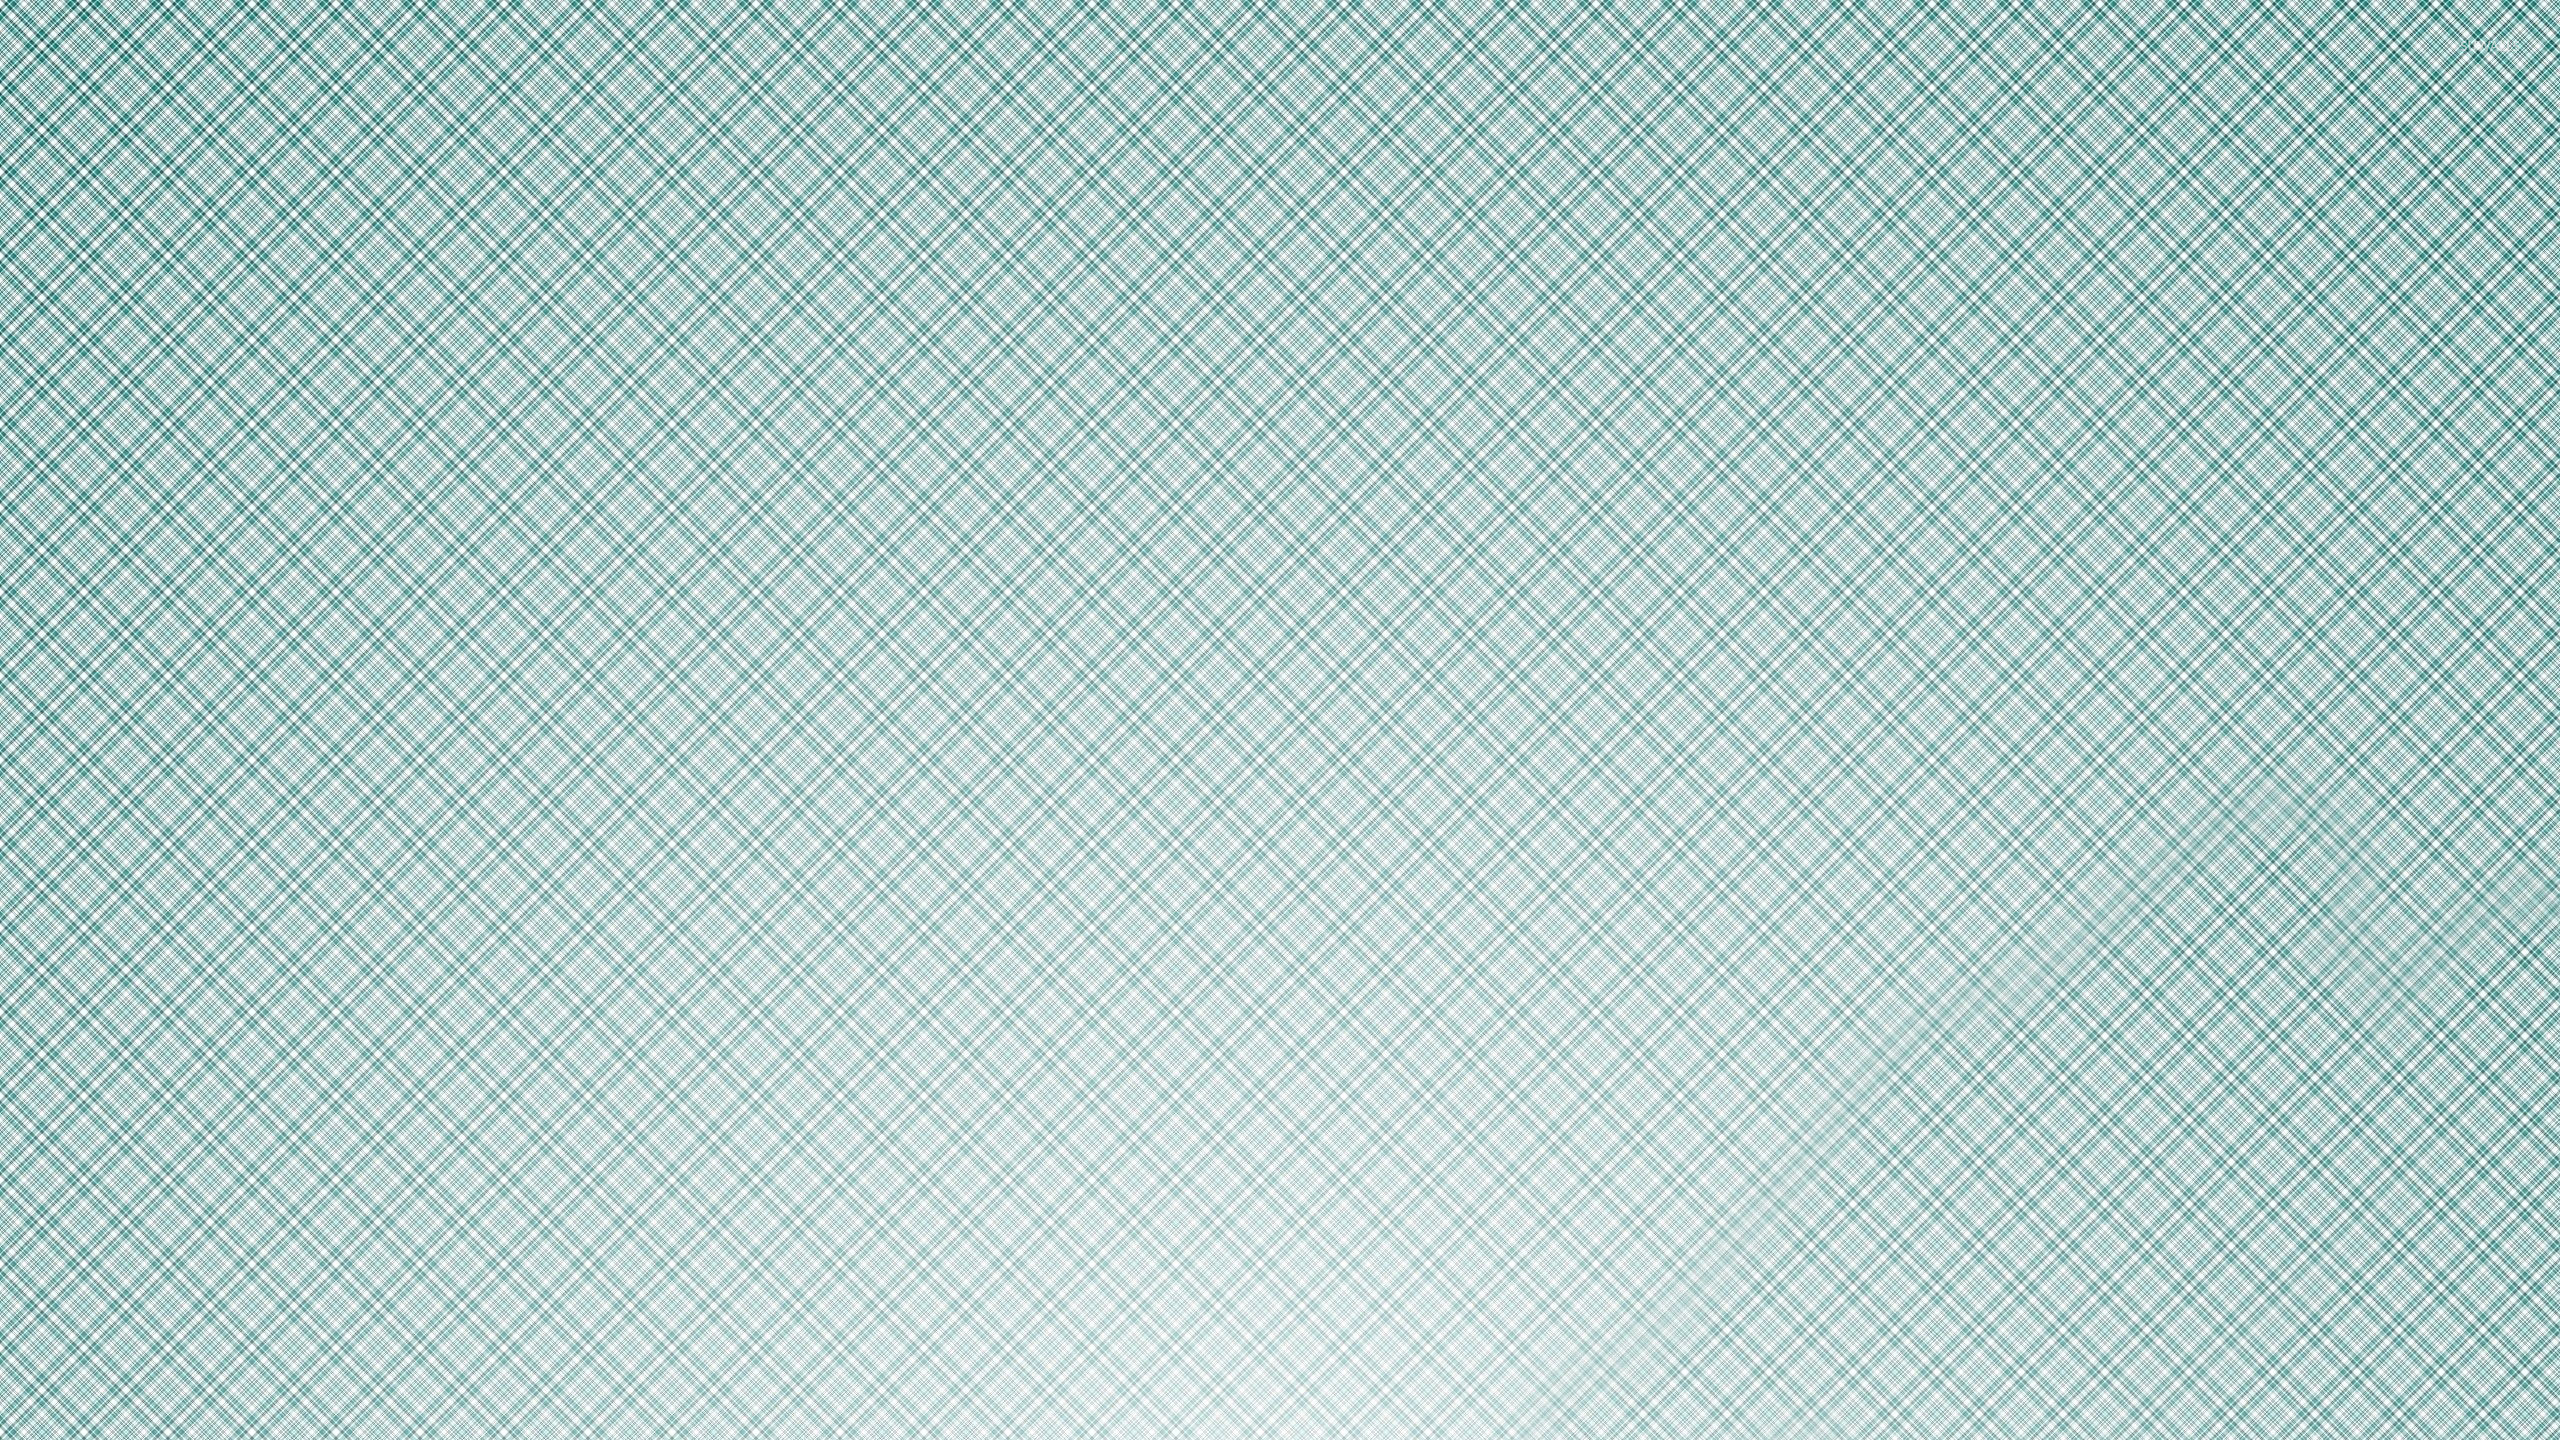 2560x1440 Blue plaid pattern wallpaper